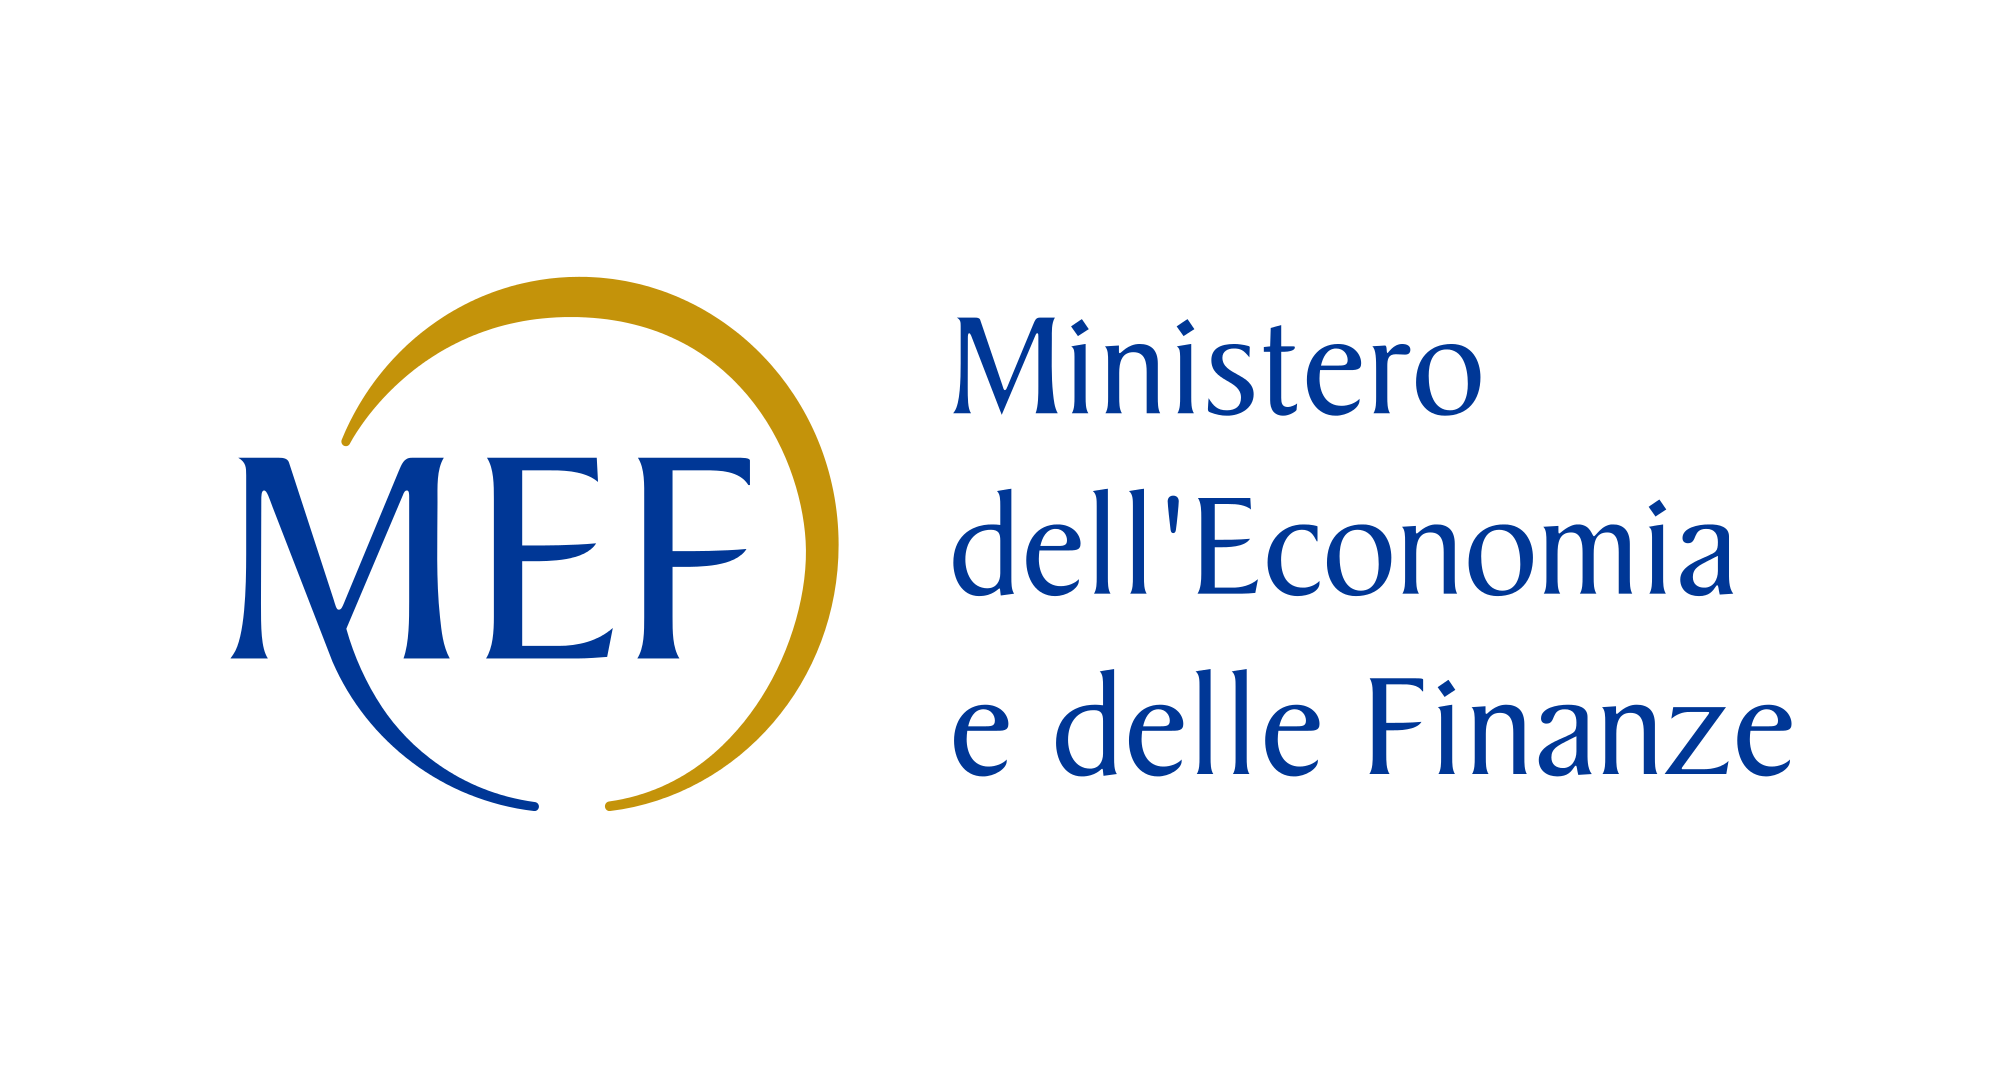 MEF Ministero Economia e Finanze